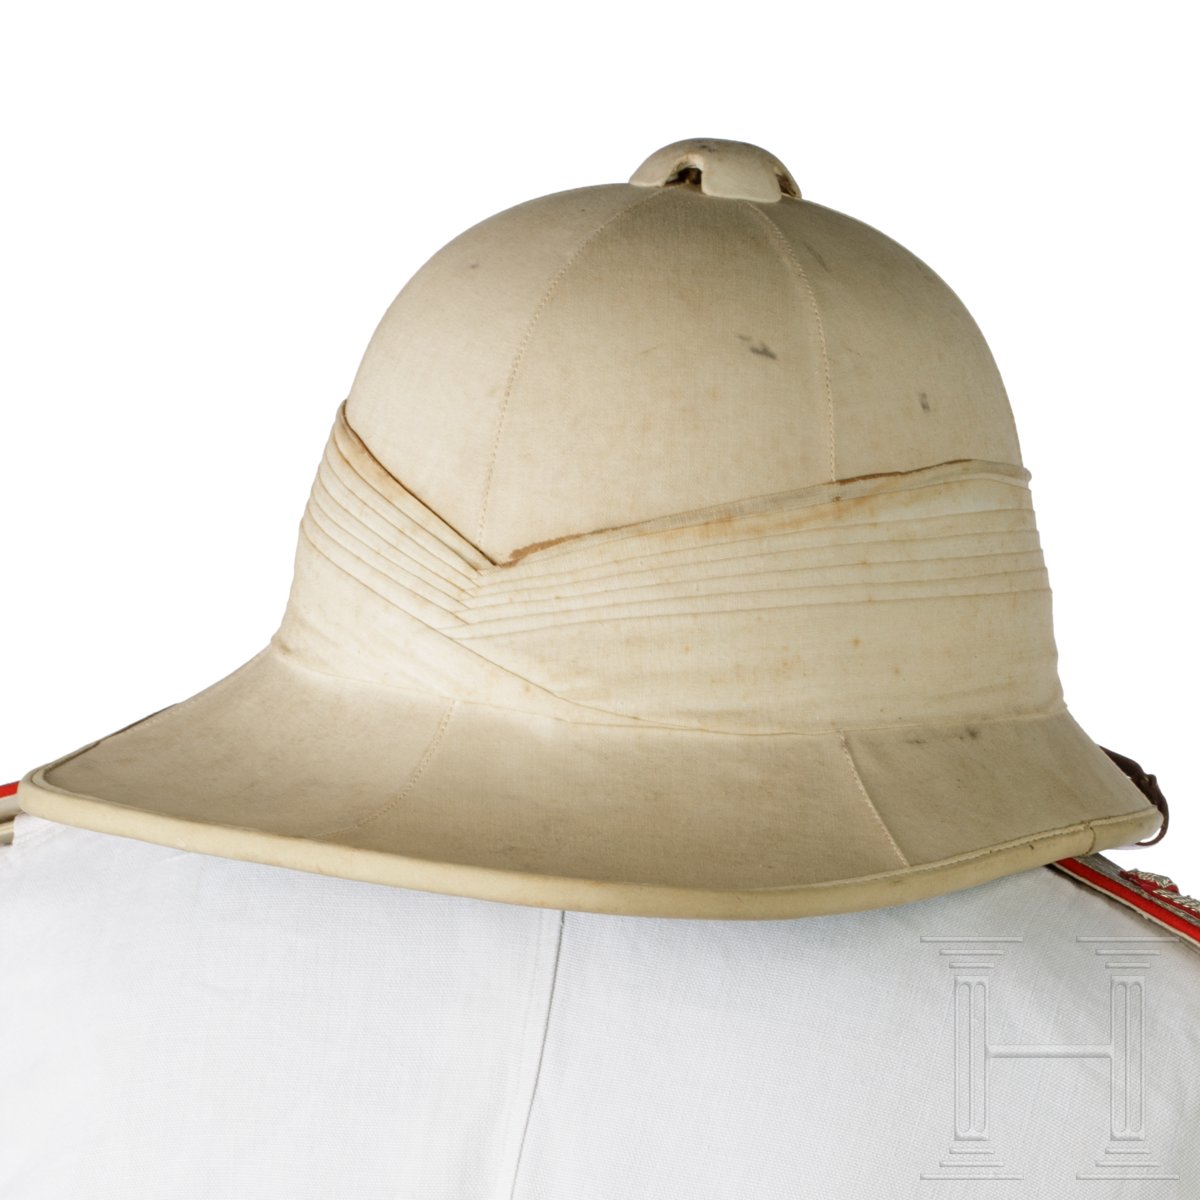 Sommeruniform für einen Generale di Brigata in den Kolonien - Image 3 of 6